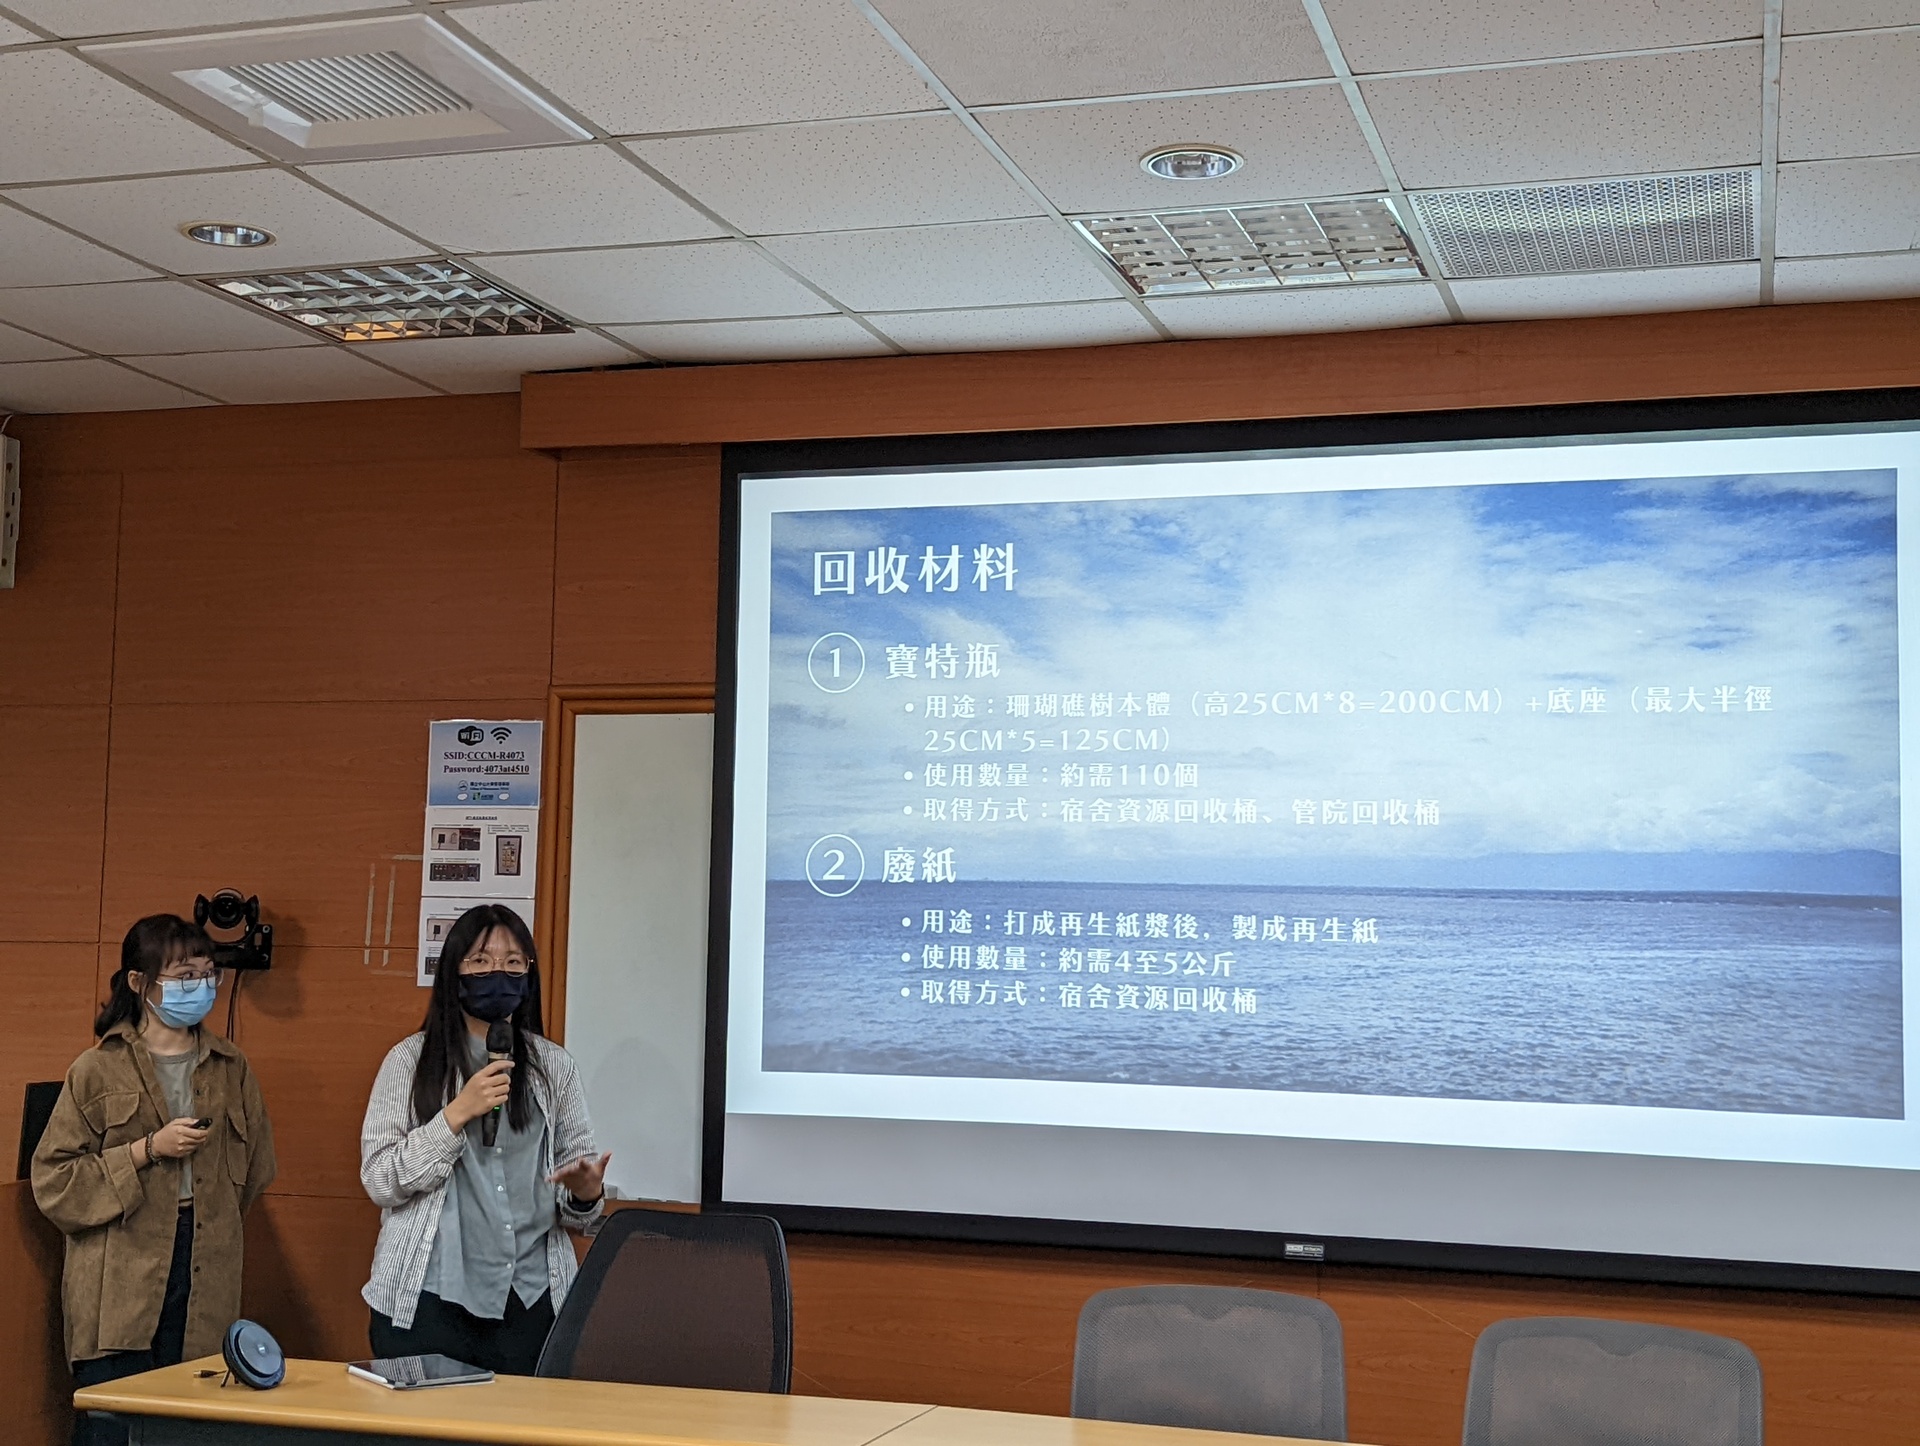 第三名隊伍「24Hr」由王苡臻、林昀儒、黃靖棠組成，以SDG14(保育海洋生態)為核心理念進行設計。